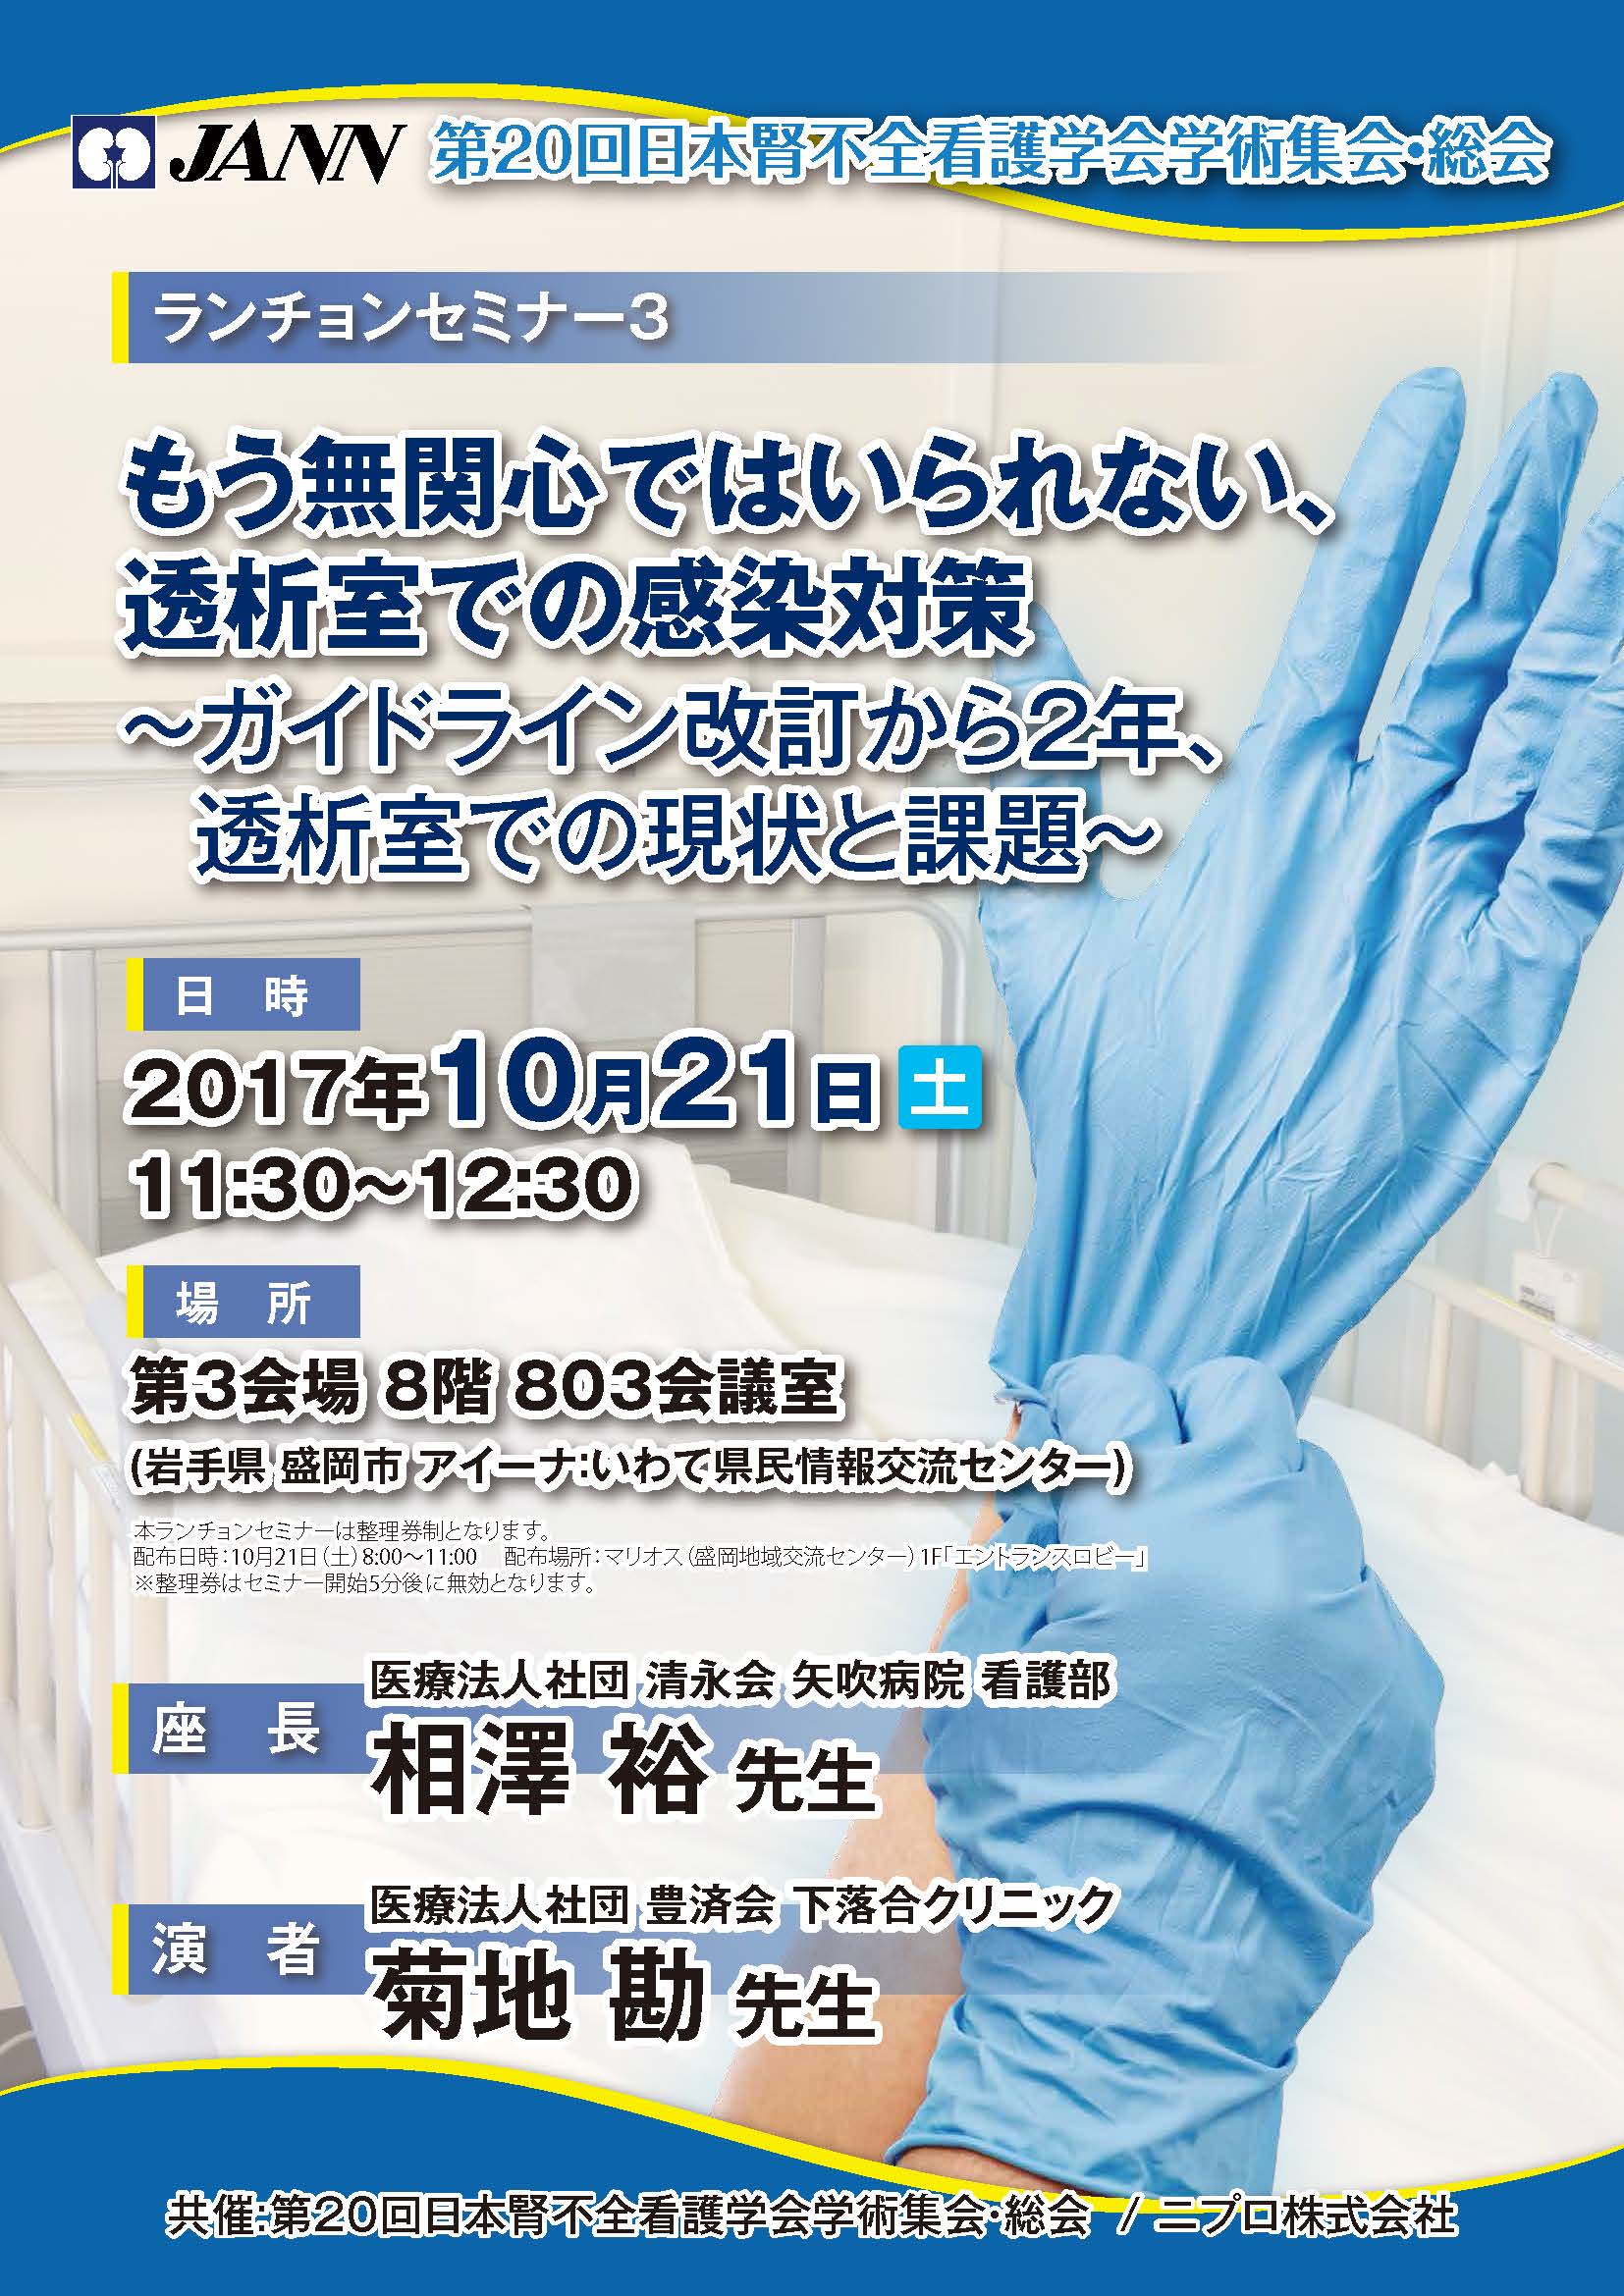 第20回日本腎不全看護学会学術集会・総会<br />ランチョンセミナー3<br />もう無関心ではいられない、透析室での感染対策<br />～ガイドライン改訂から2年、透析室での現状と課題～